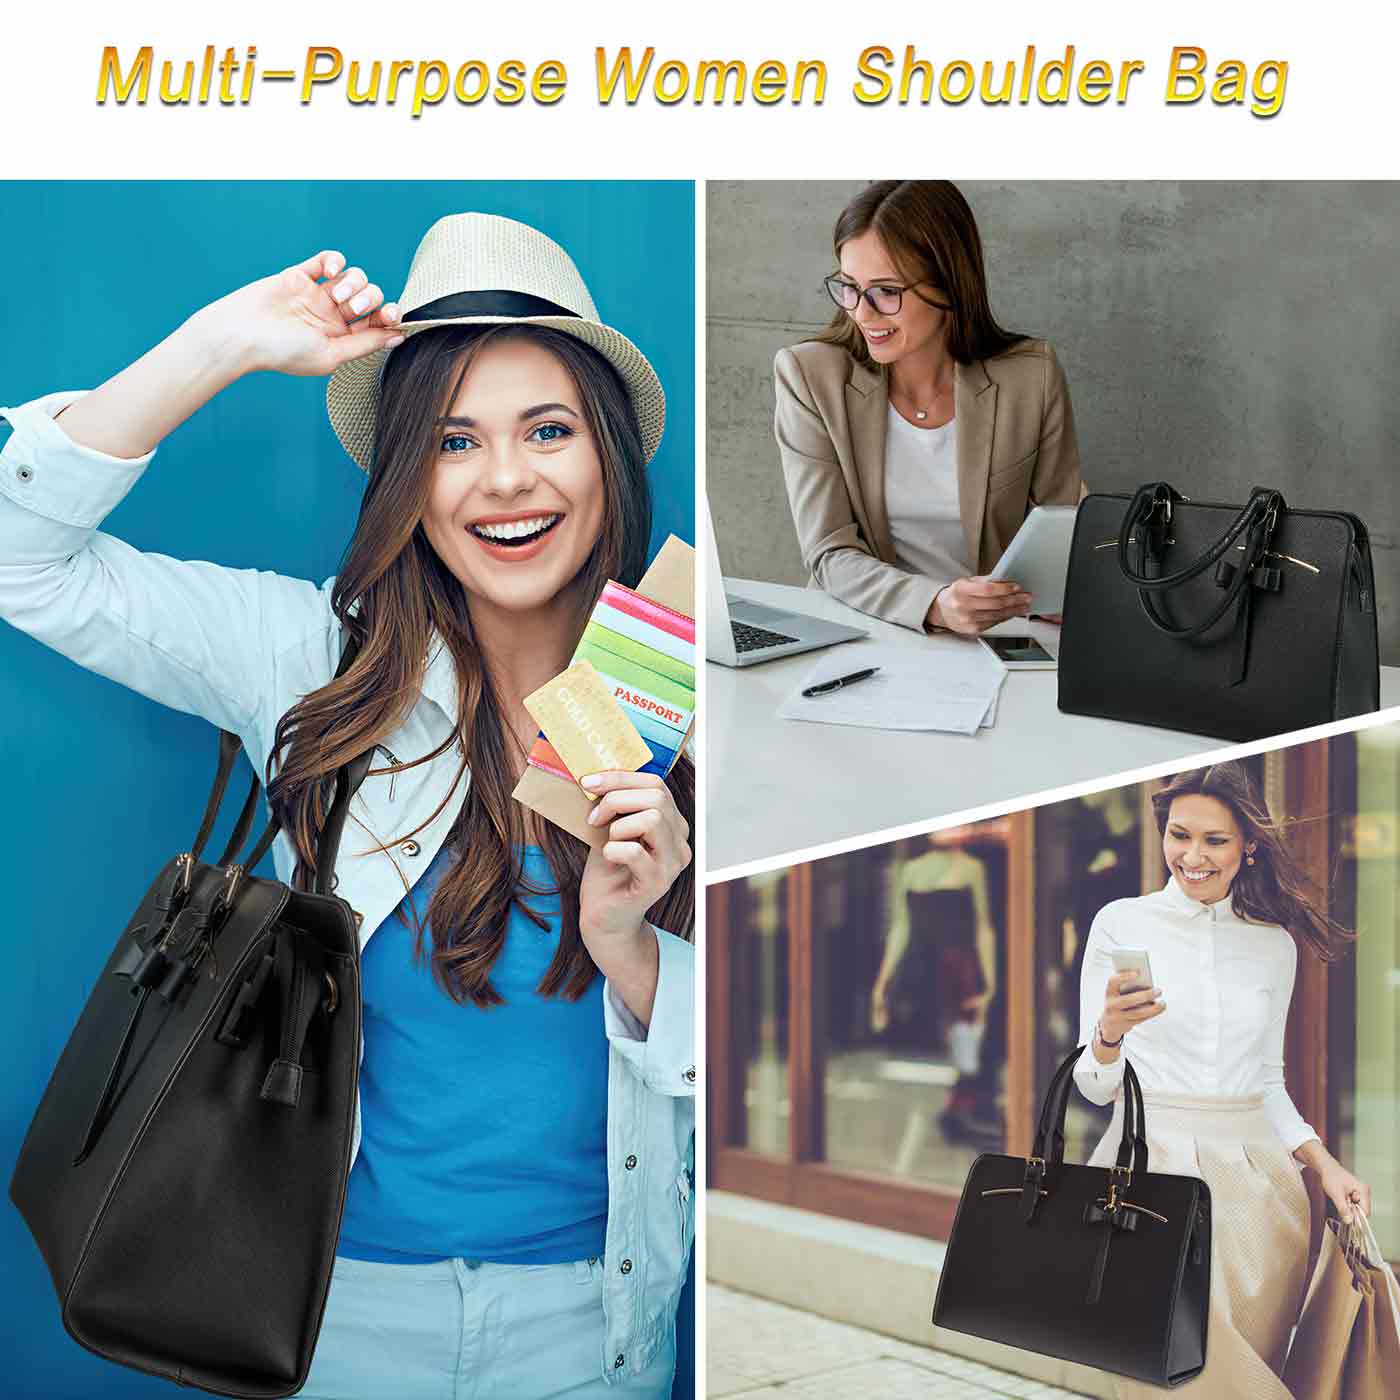 Women's shoulder bags